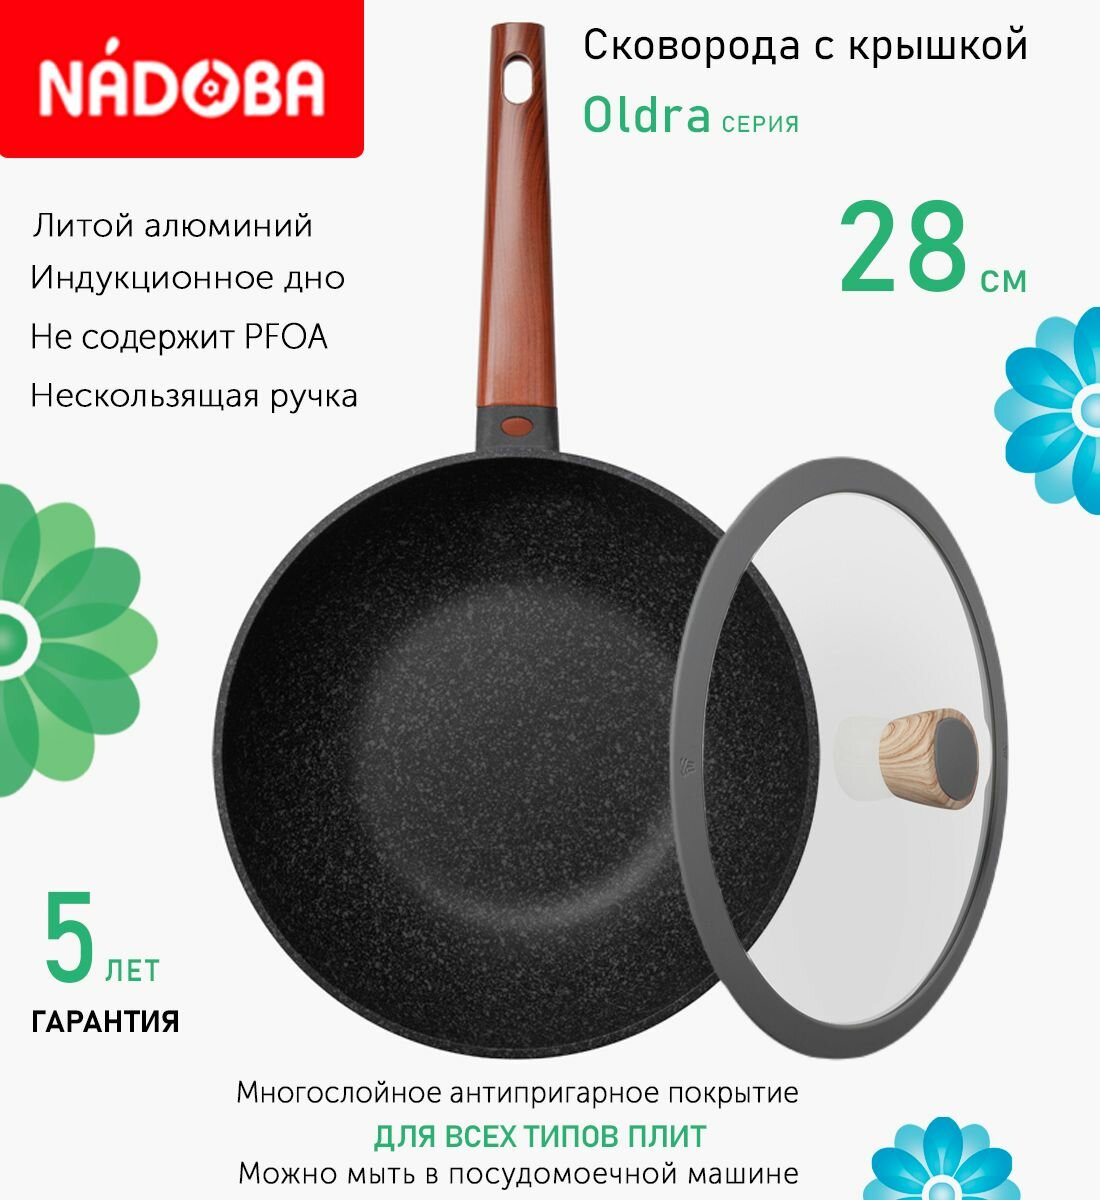 Сковорода вок с крышкой NADOBA 28см, серия "Oldra" (арт. 728822/751211)